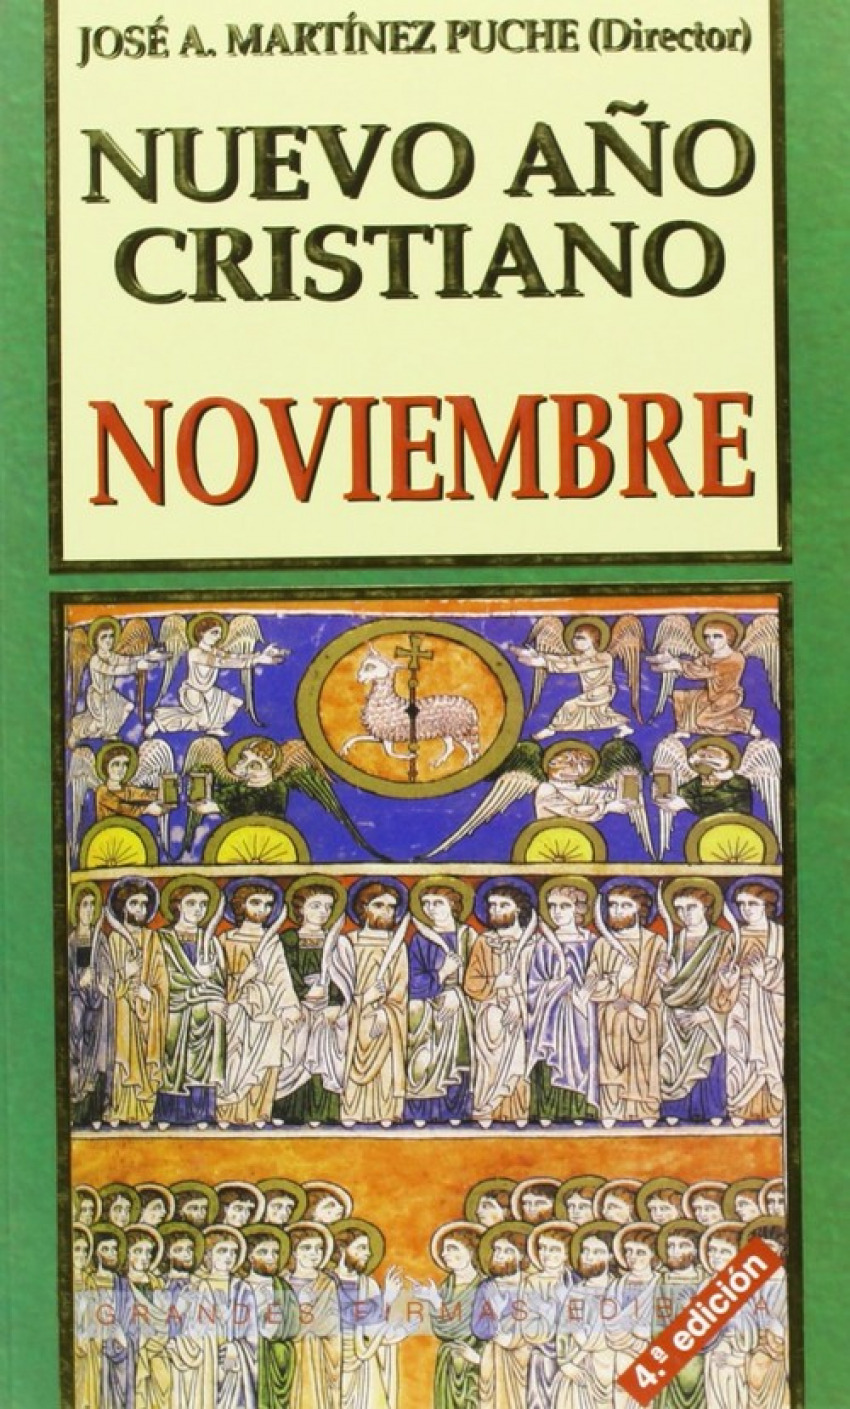 Nuevo Año Cristiano.Noviembre - Martínez Puche, José Antonio (Dir.)